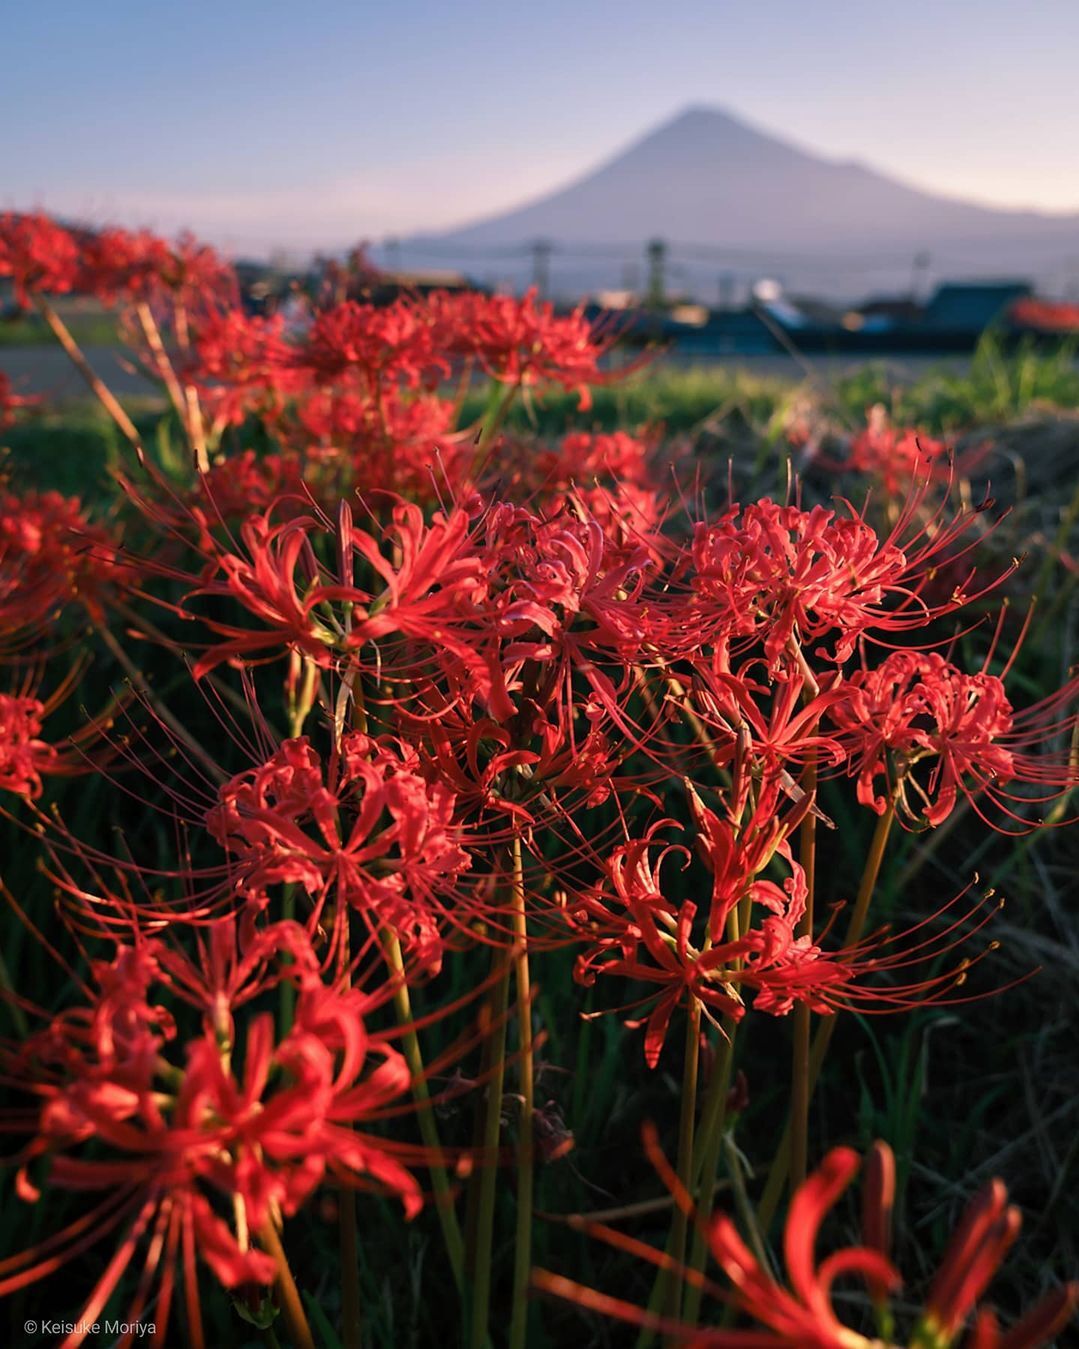 Mùa thu Nhật Bản thường được ghi dấu với những thảm lá vàng. Tuy nhiên vào mùa hoa bỉ ngạn, khi không gian dần chuyển đỏ, cũng là lúc báo hiệu về một mùa thu mới. Ảnh: Keisuke Moriya